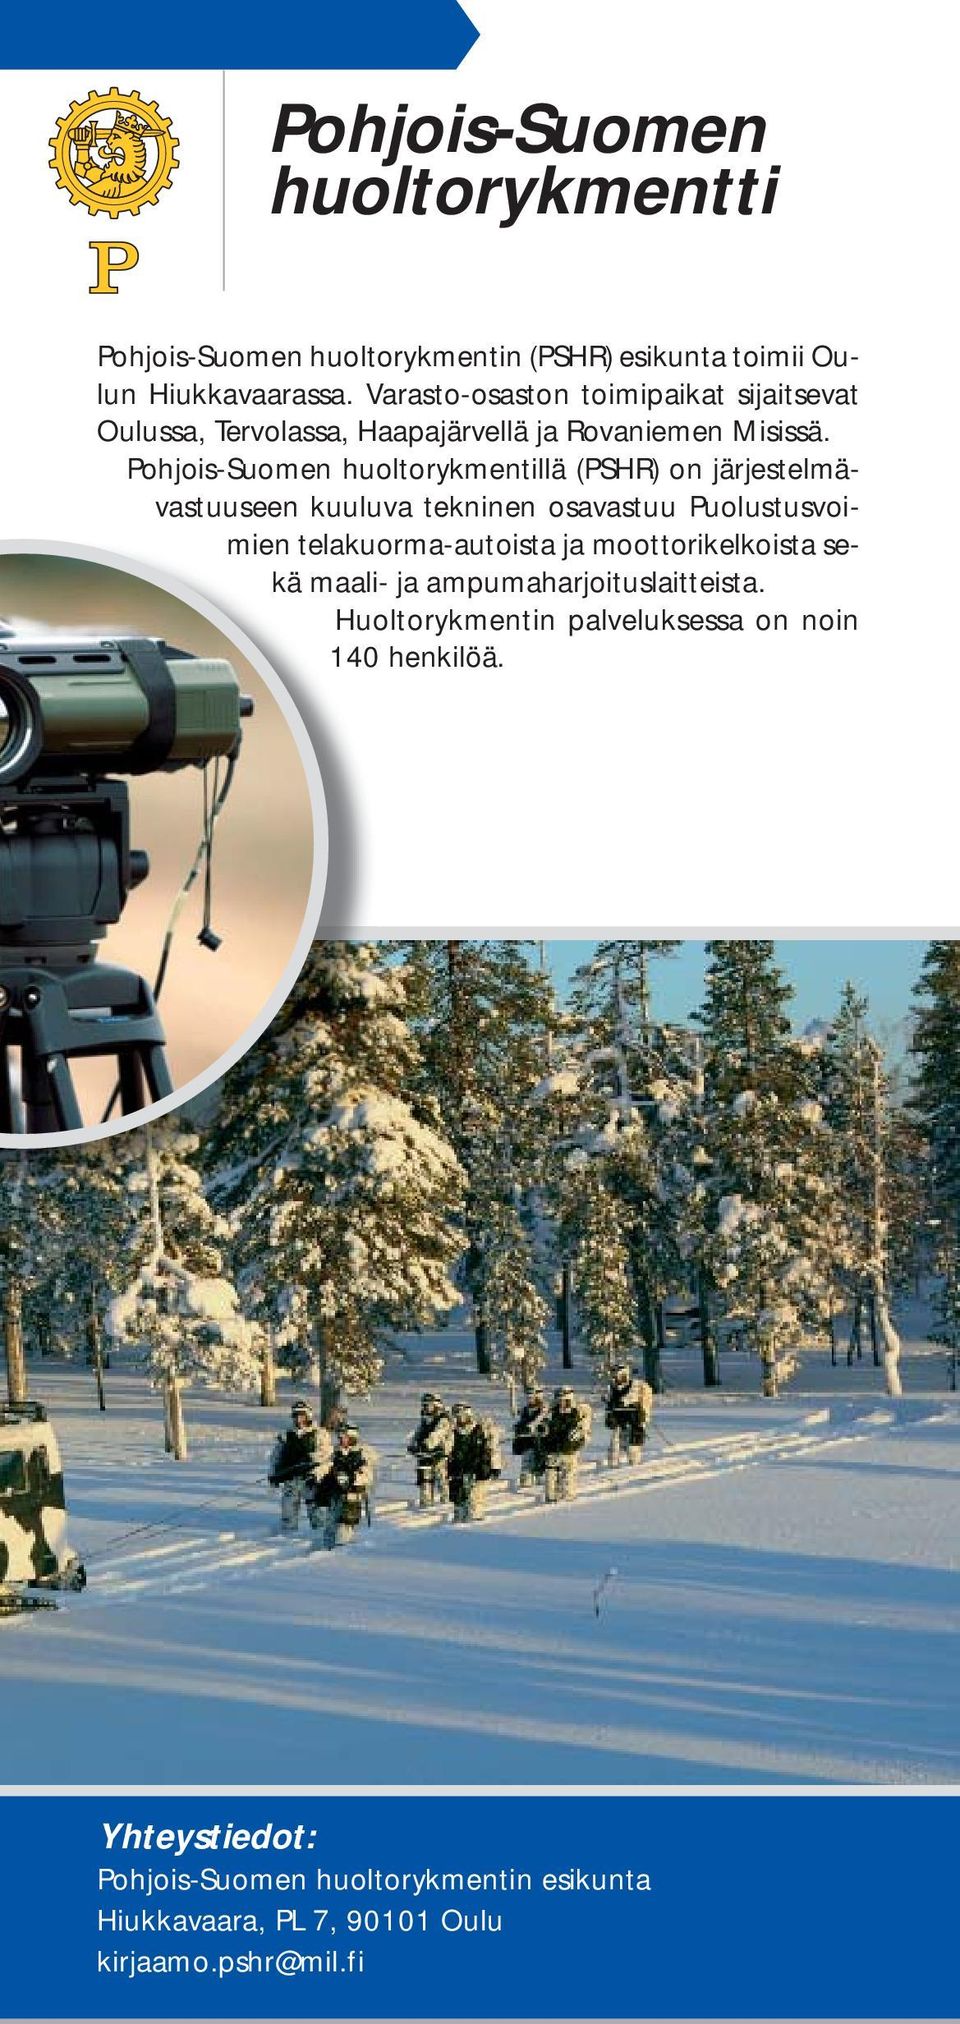 Pohjois-Suomen huoltorykmentillä (PSHR) on järjestelmävastuuseen kuuluva tekninen osavastuu Puolustusvoi- mien telakuorma-autoista ja